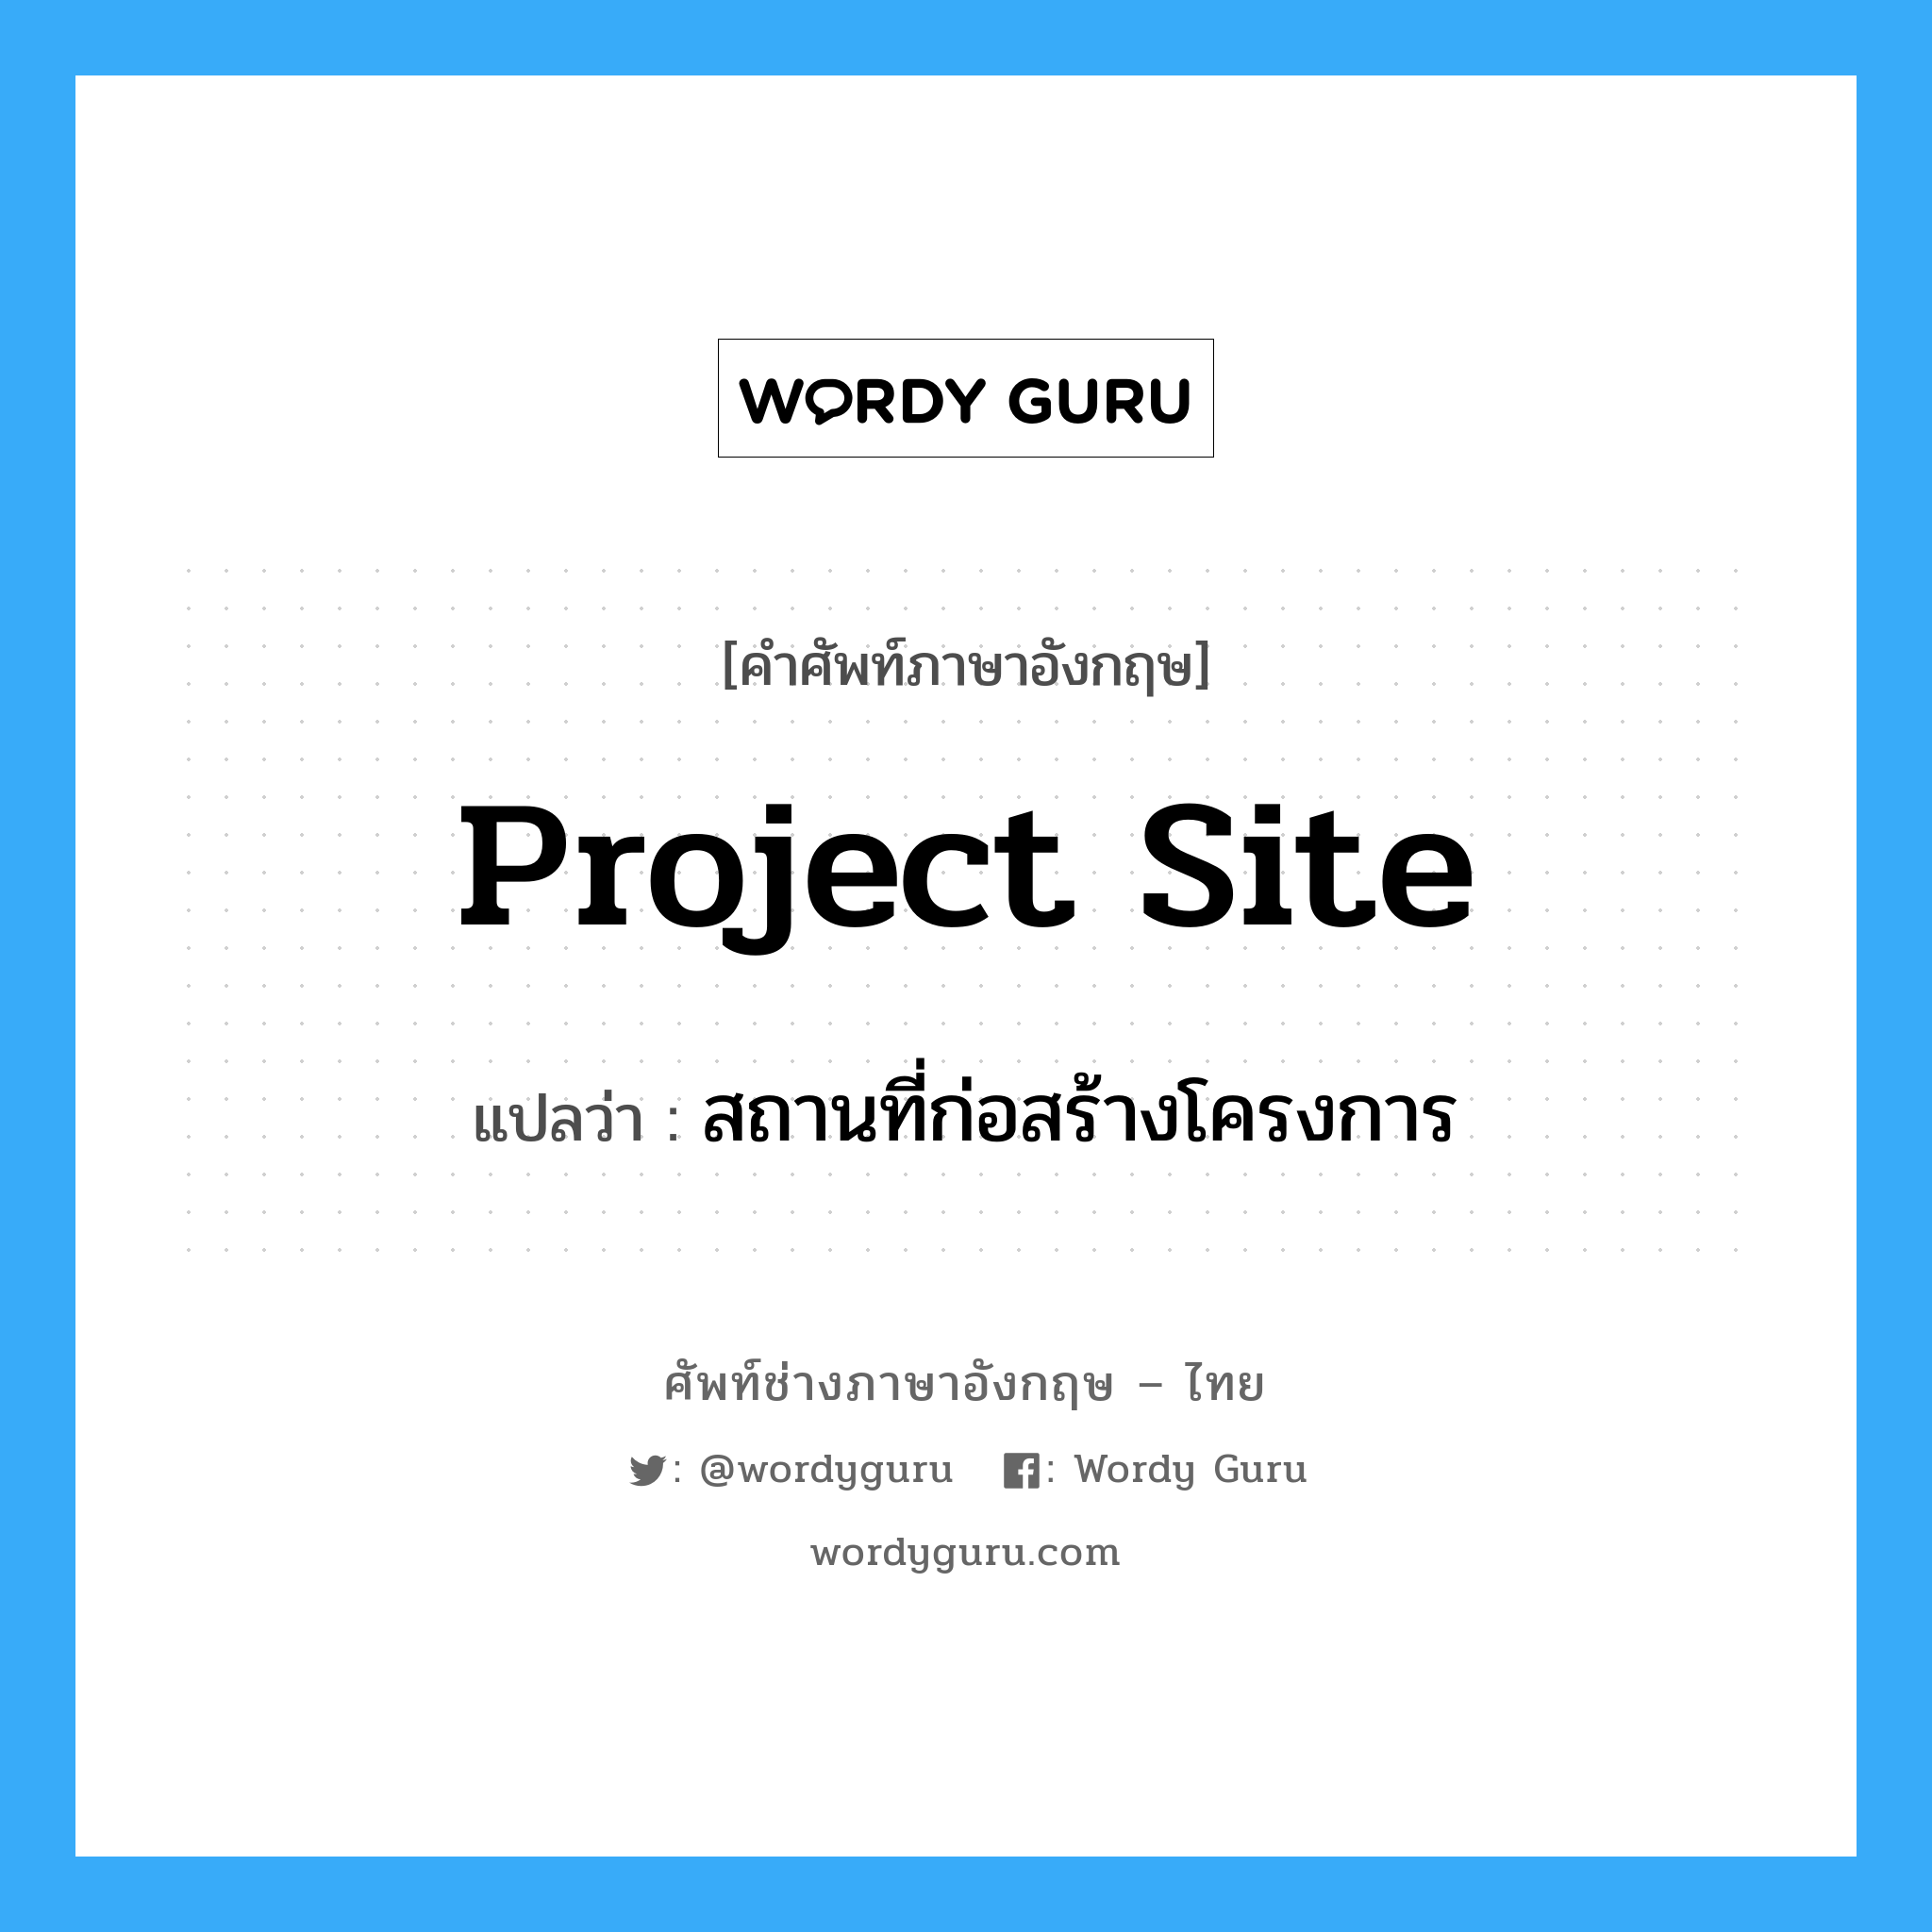 Project Site แปลว่า?, คำศัพท์ช่างภาษาอังกฤษ - ไทย Project Site คำศัพท์ภาษาอังกฤษ Project Site แปลว่า สถานที่ก่อสร้างโครงการ